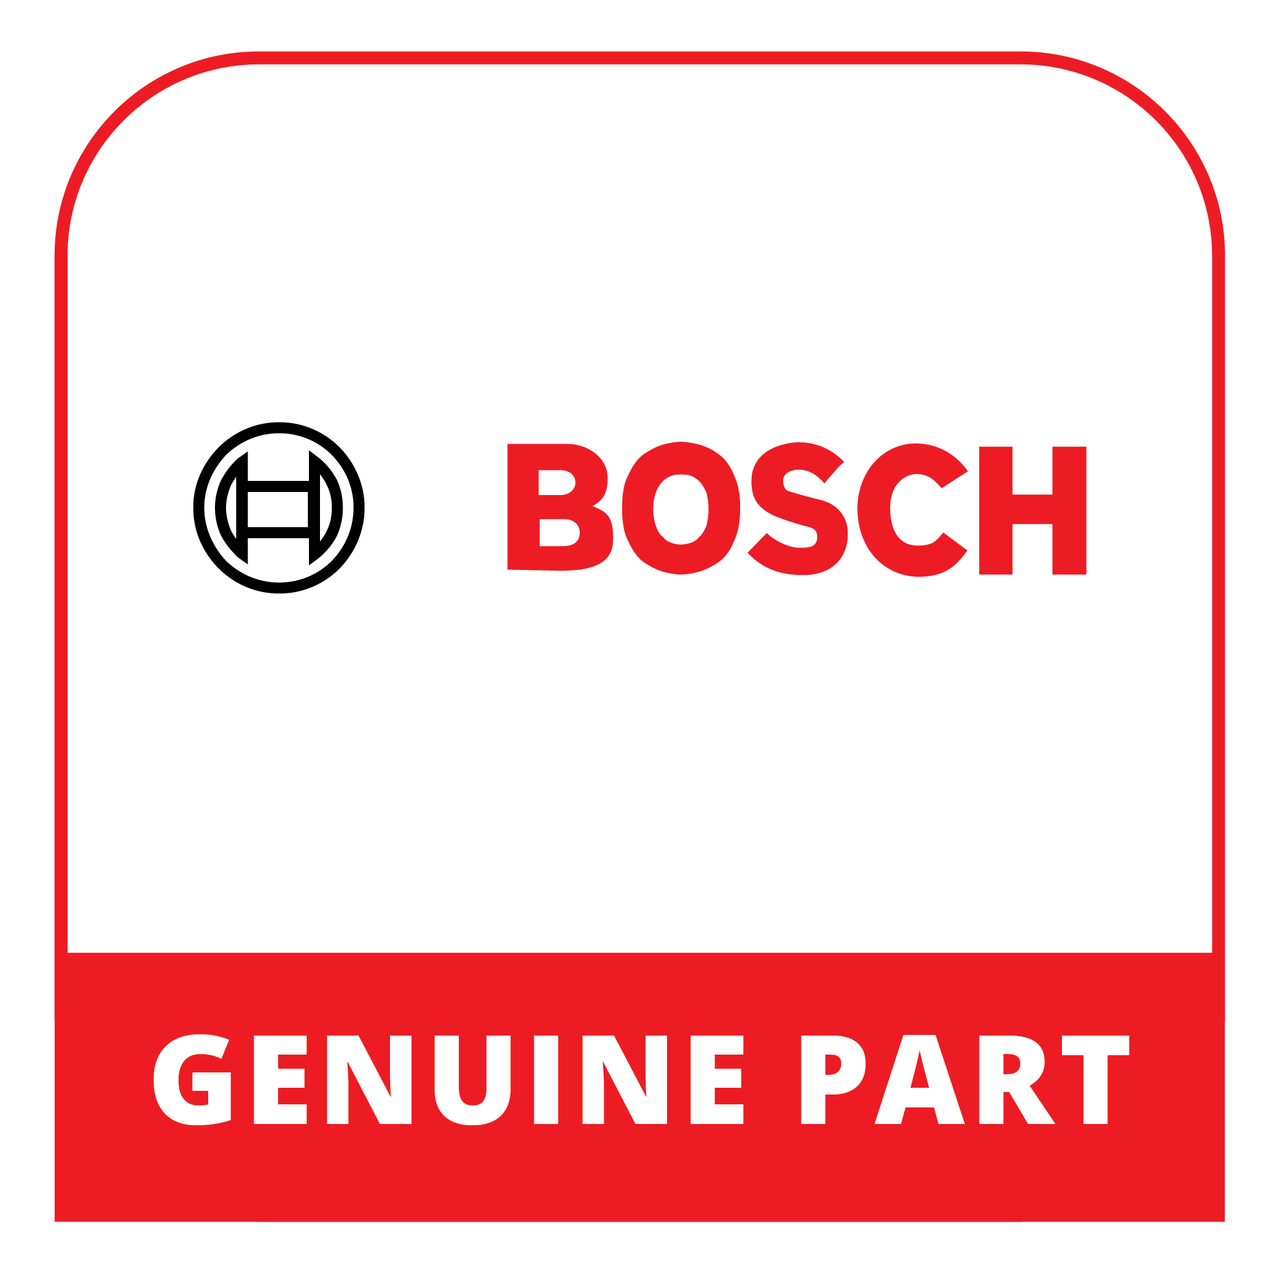 Bosch (Thermador) 20001390 - Door - Genuine Bosch (Thermador) Part